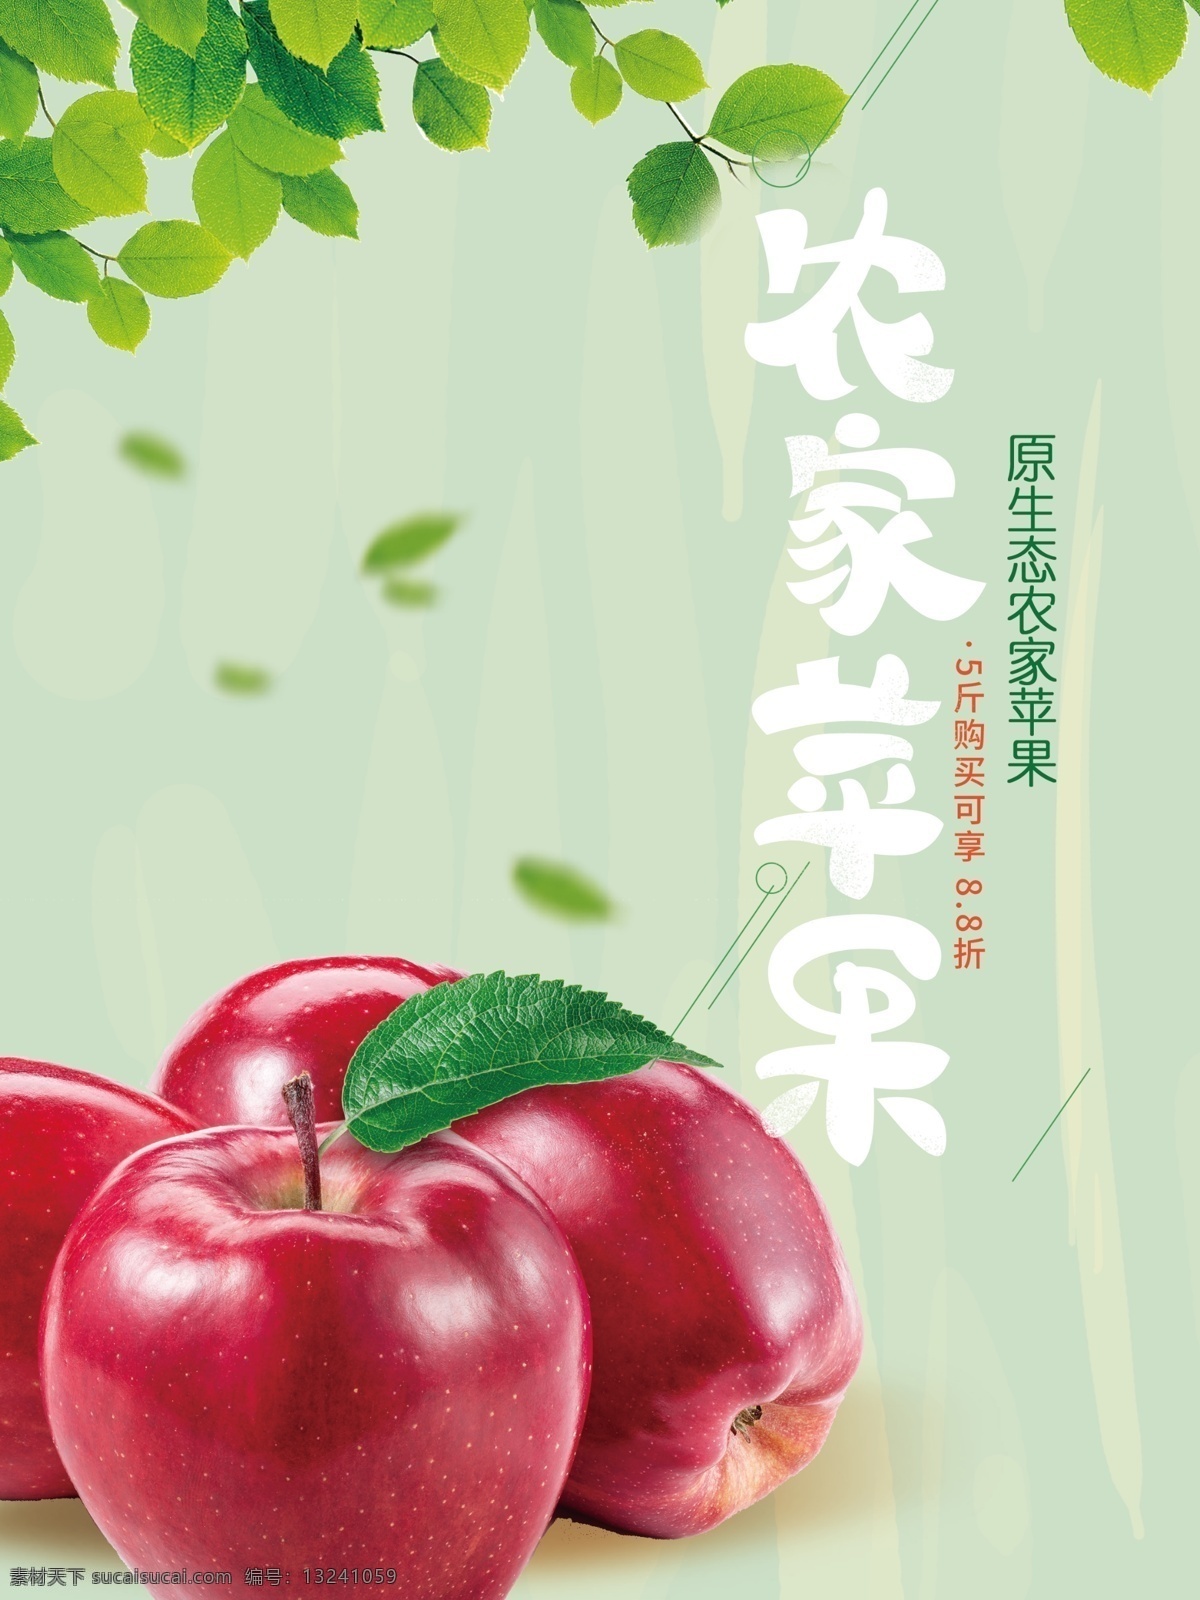 苹果海报 农家 绿叶 原生态 环保